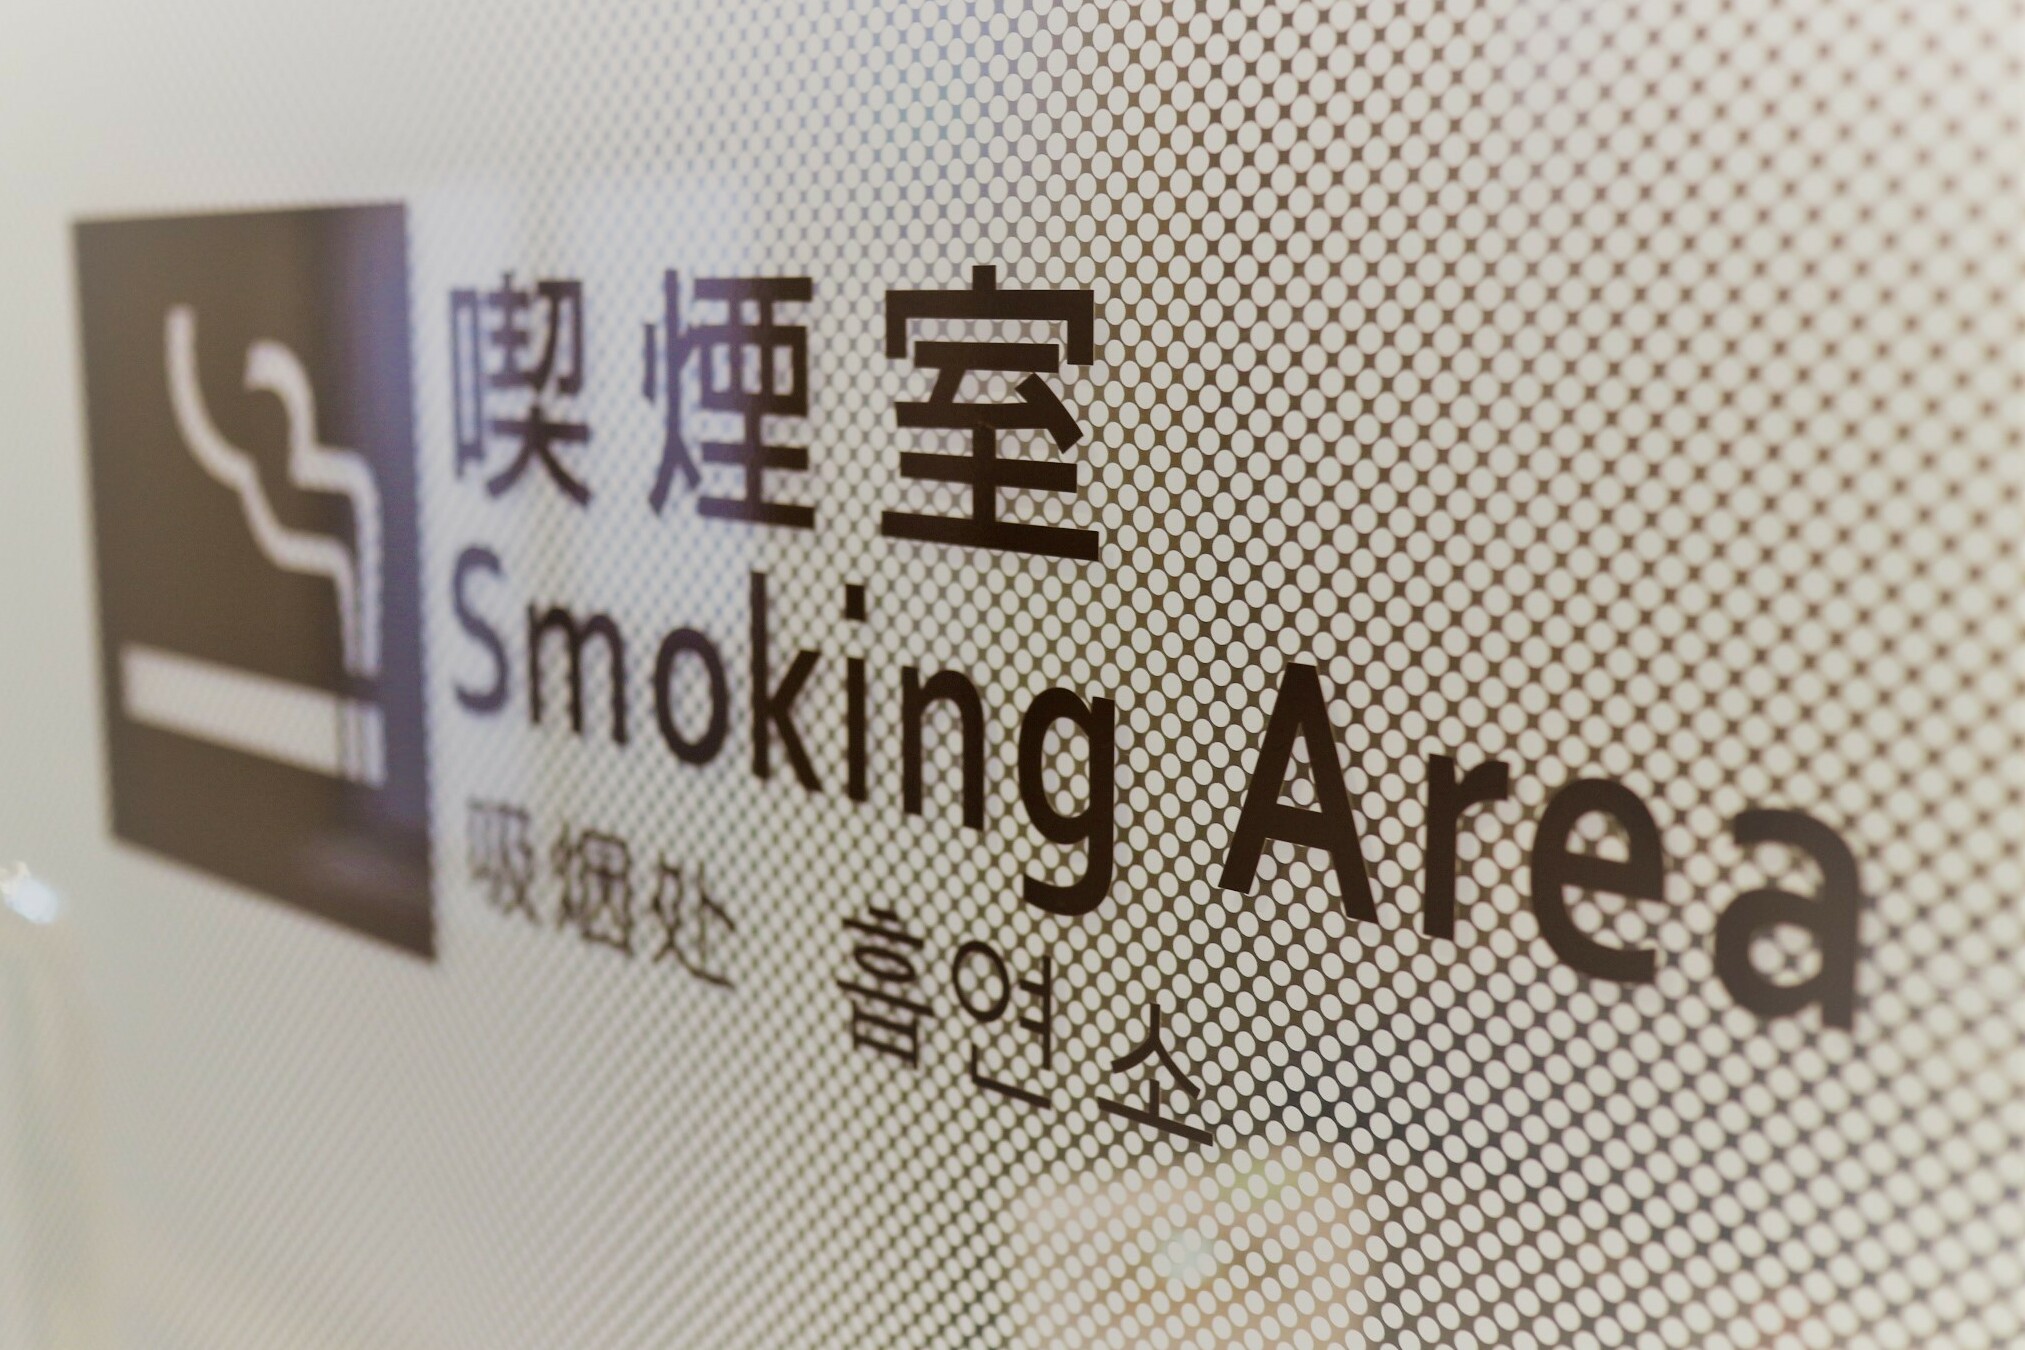 【西館1階 喫煙所】お煙草を吸われる際は喫煙所にてお願いいたします。